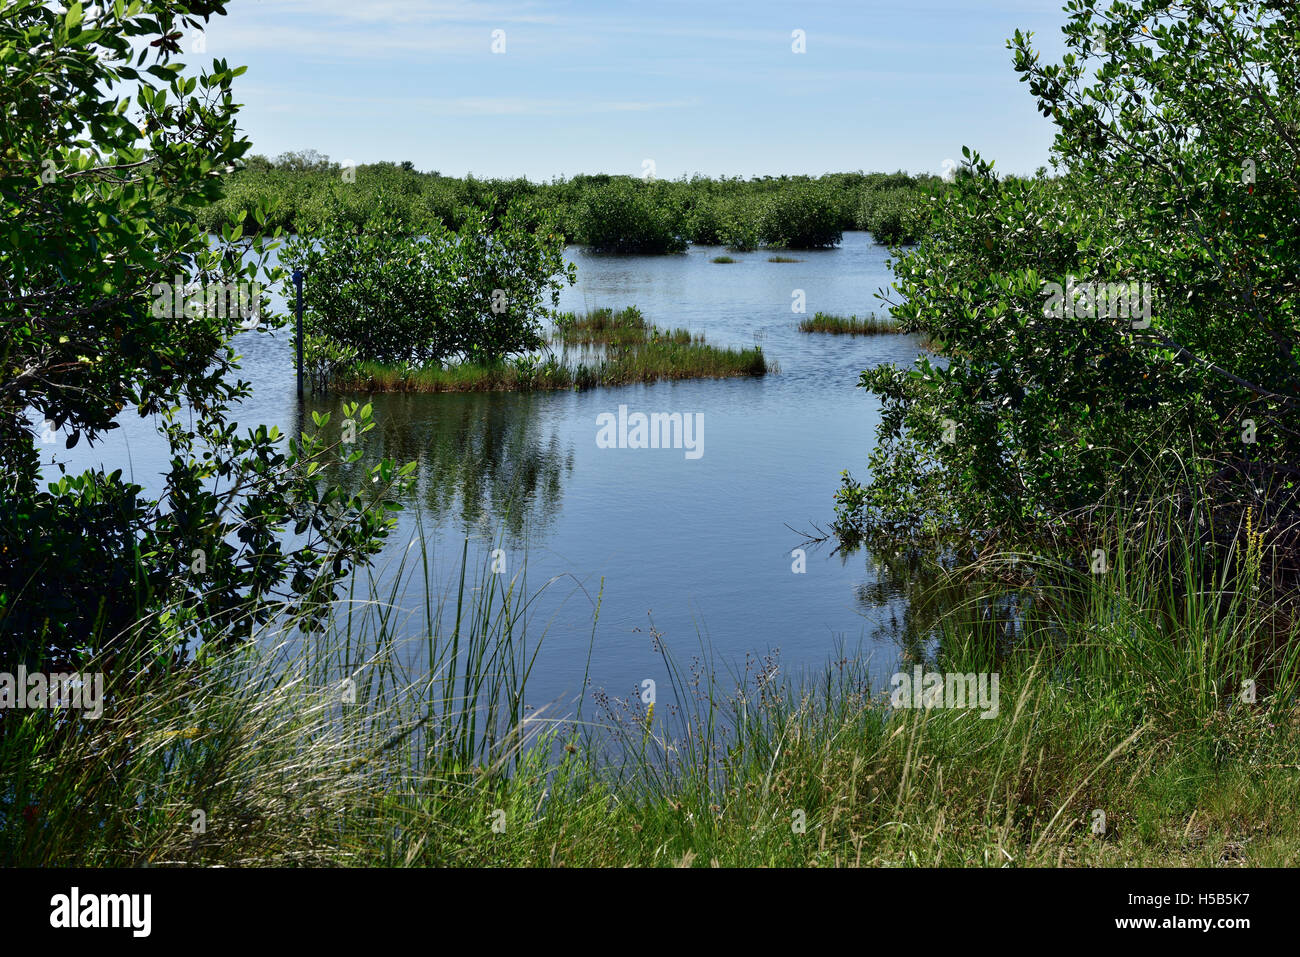 Le zone umide in Marsh Bird Sanctuary, migliaia di Isola di preservare la natura Park e dal punto di vista, Everglades National Park, Florida, Stati Uniti d'America Foto Stock